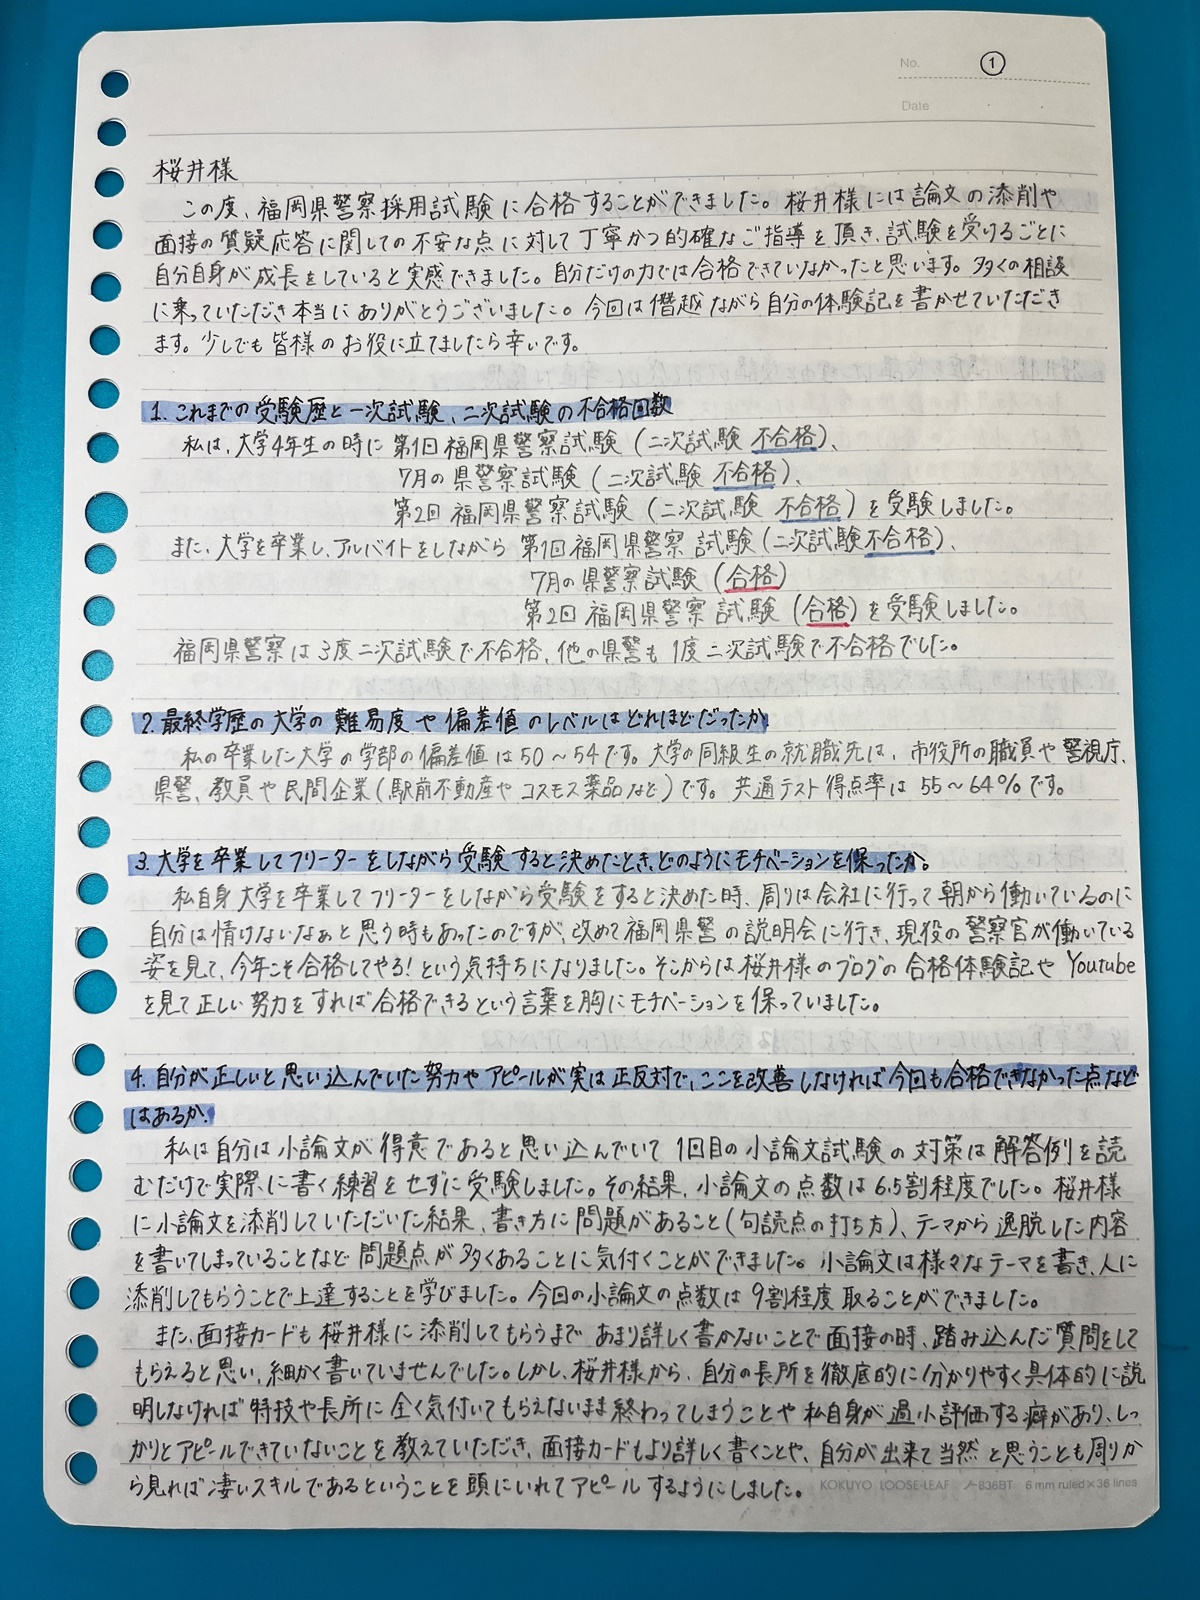 福岡県警の合格体験記と面接対策の方法